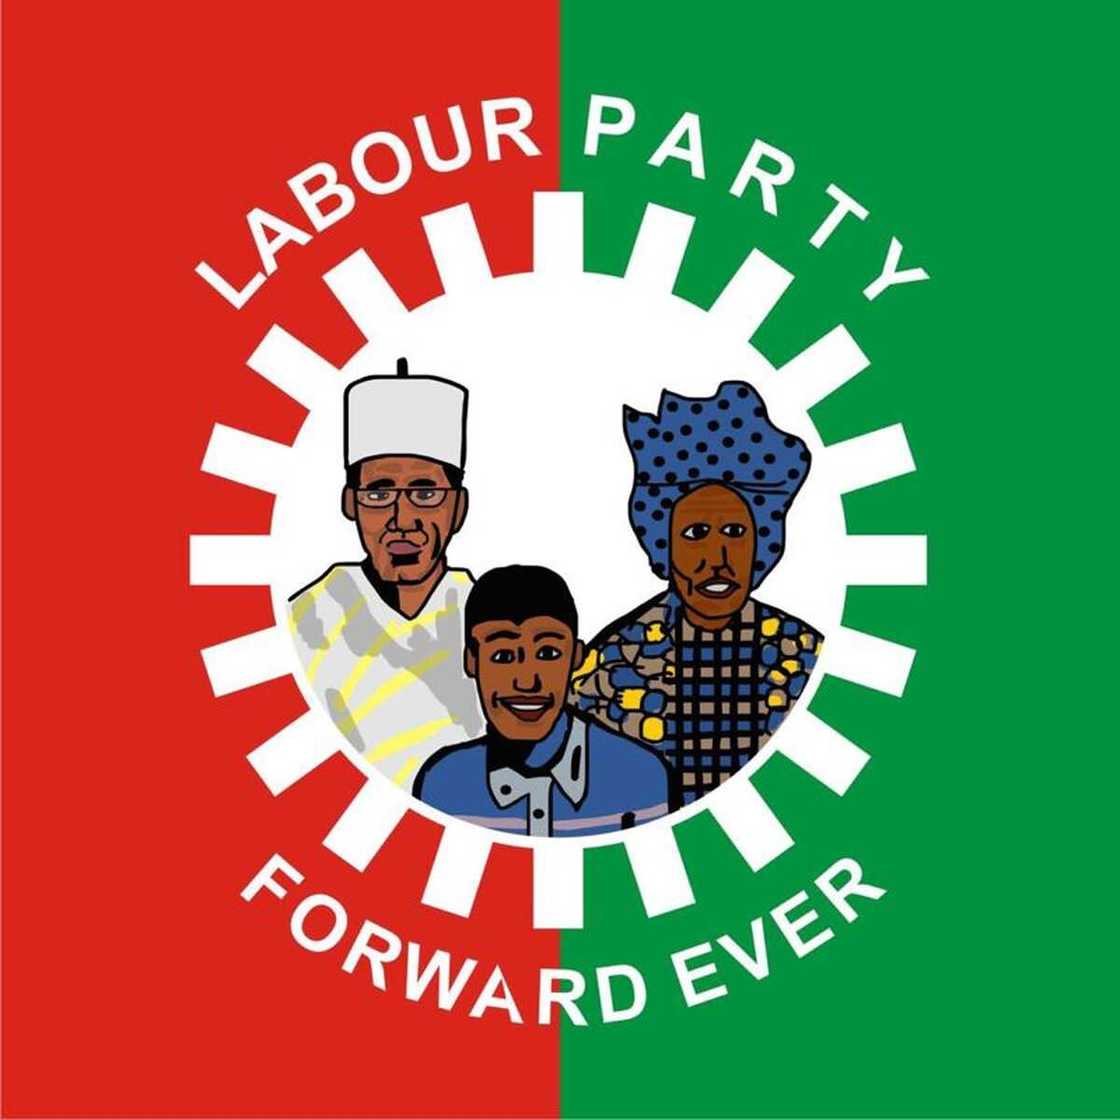 Labour Party's logo